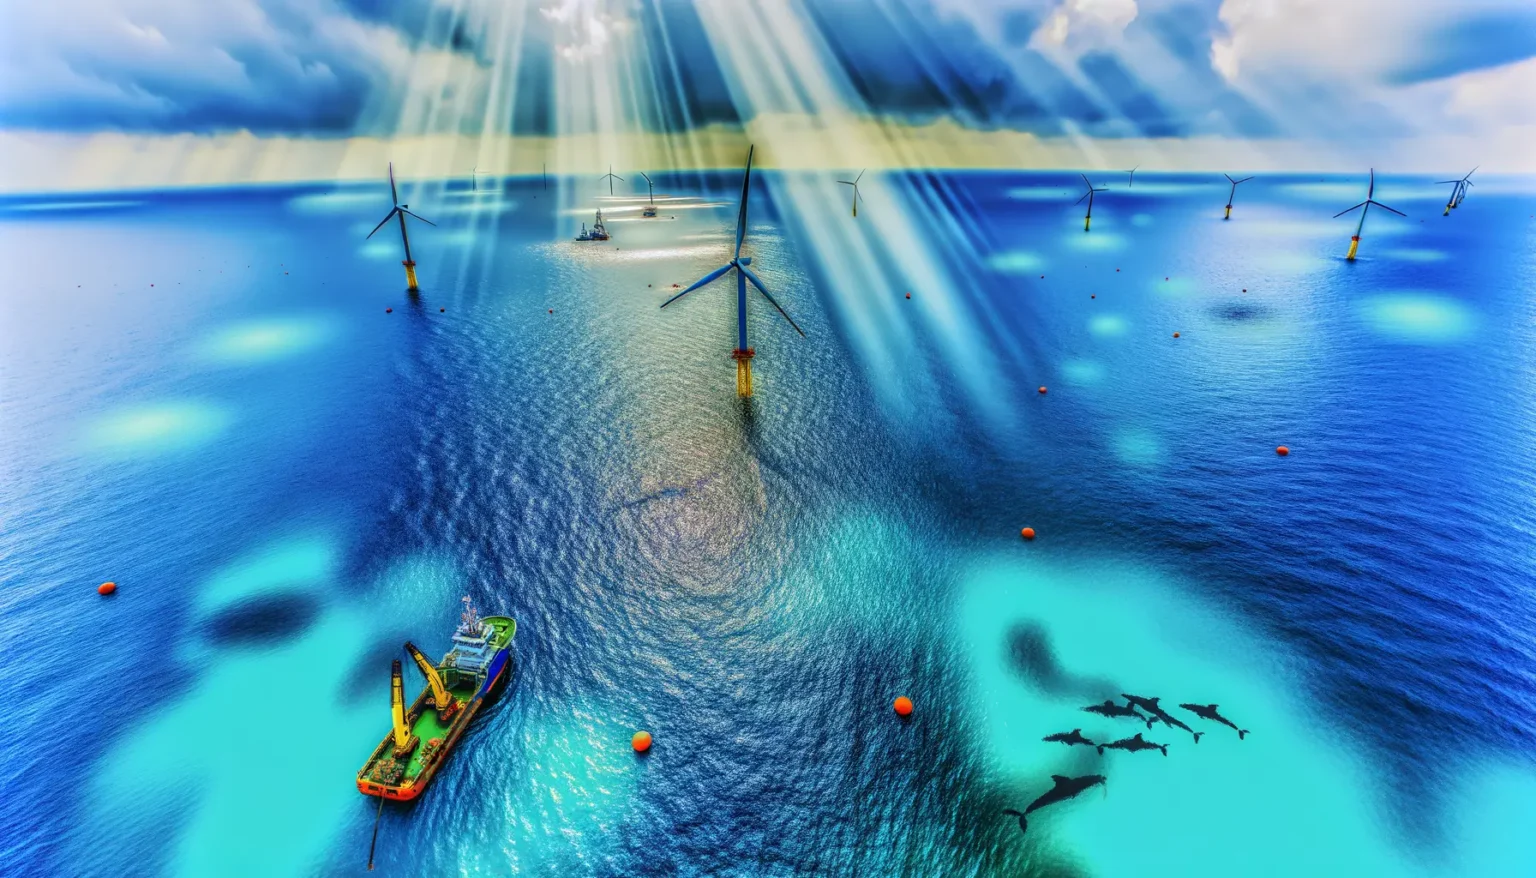 Luftaufnahme einer Gruppe von Offshore-Windkraftanlagen im Meer mit einem Schiff in der Nähe und einer Schule von Delfinen, die durch das klare blaue Wasser schwimmen. Sonnenstrahlen brechen durch die Wolken und erhellen das Meer.